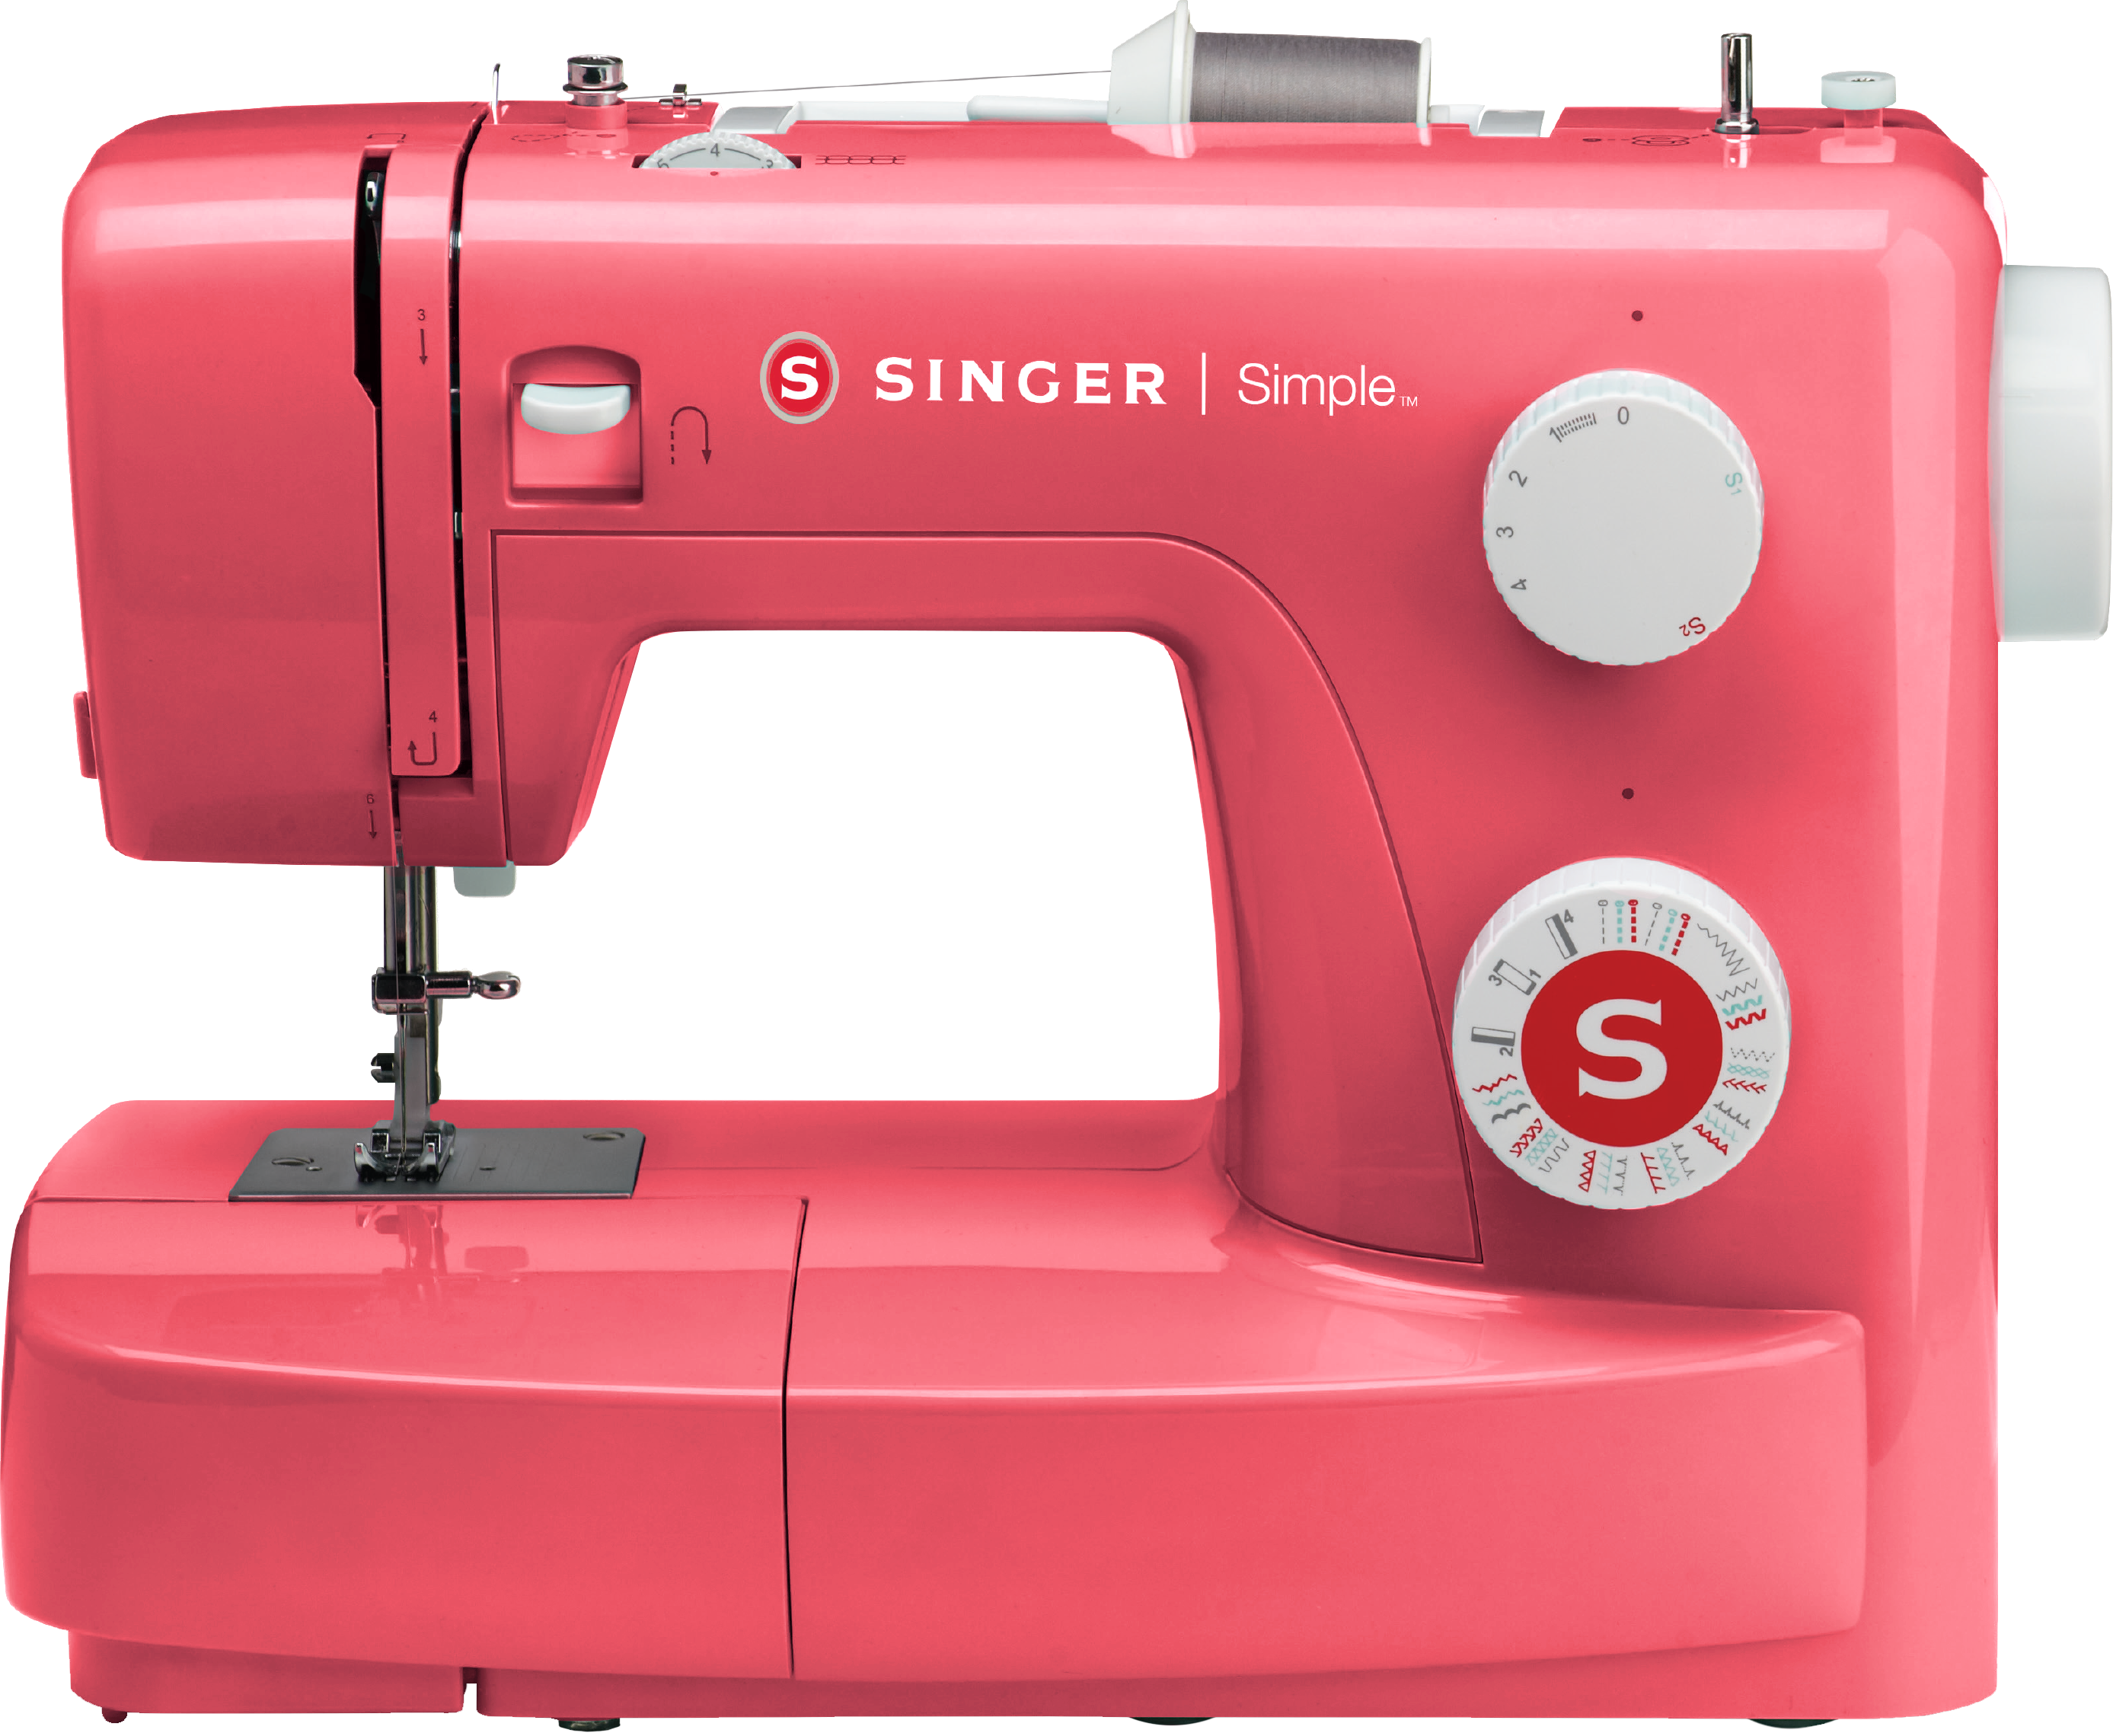 Купить швейную м. Швейная машина Singer simple 3223. Singer 3223 simple (Red). Singer m1155. Швейная машина Stitch selection модель 202.